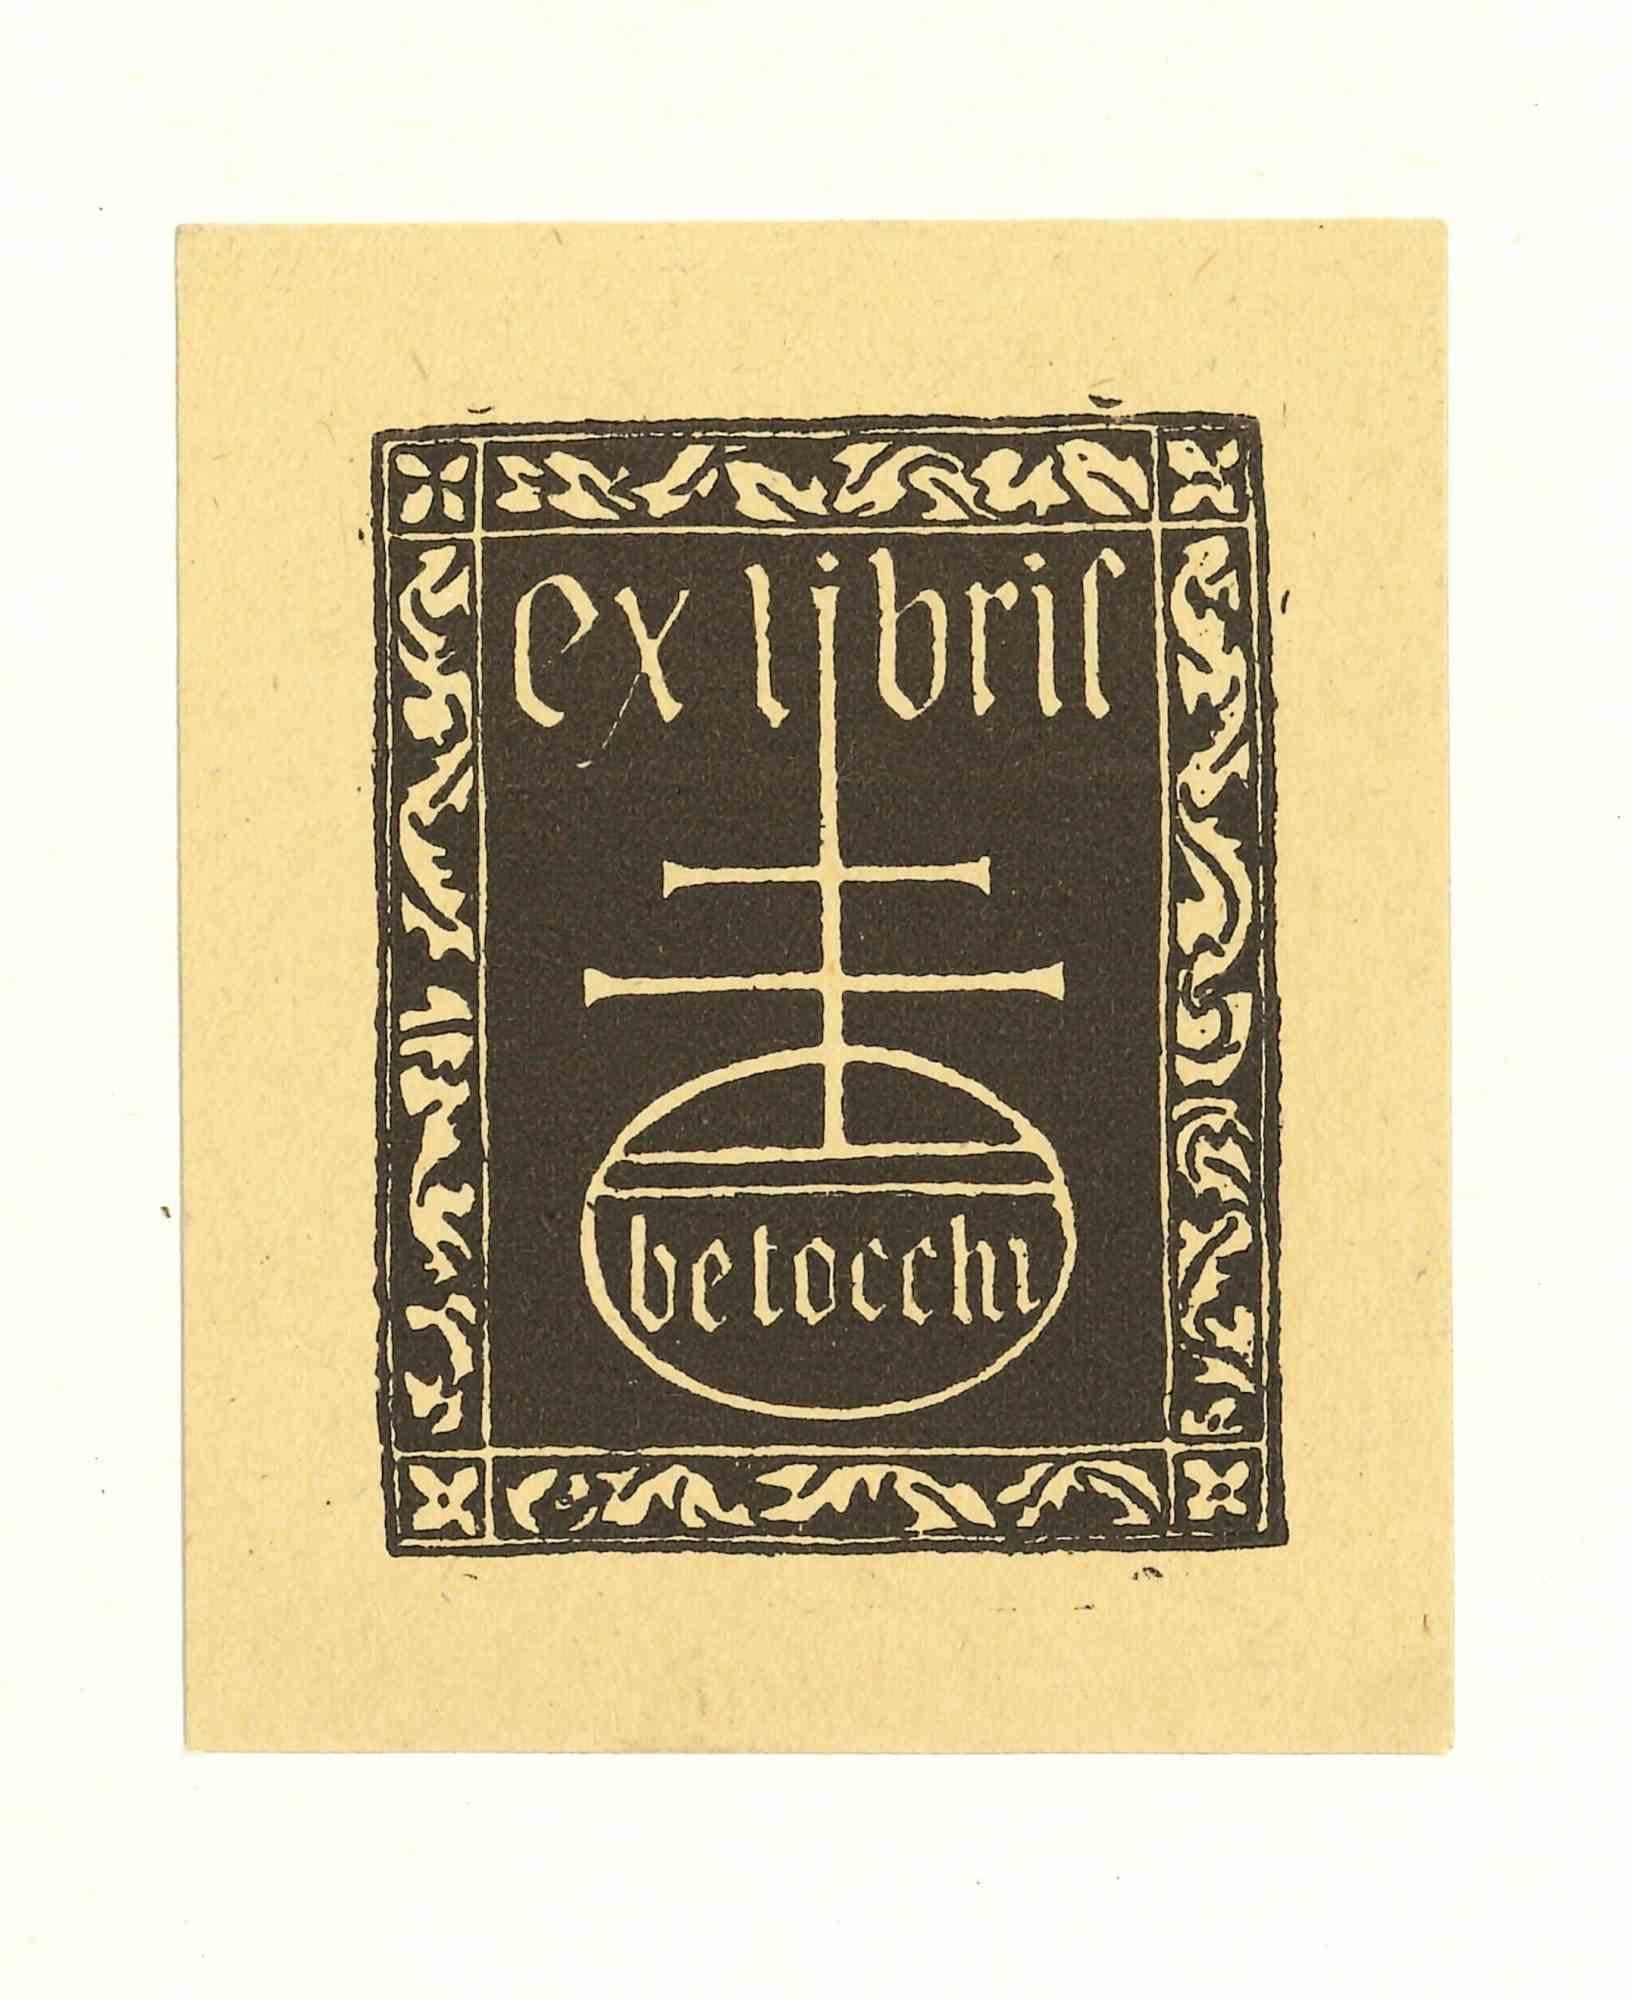 Ex Libris Betocchi - Original Woodcut - Mid-20th Century